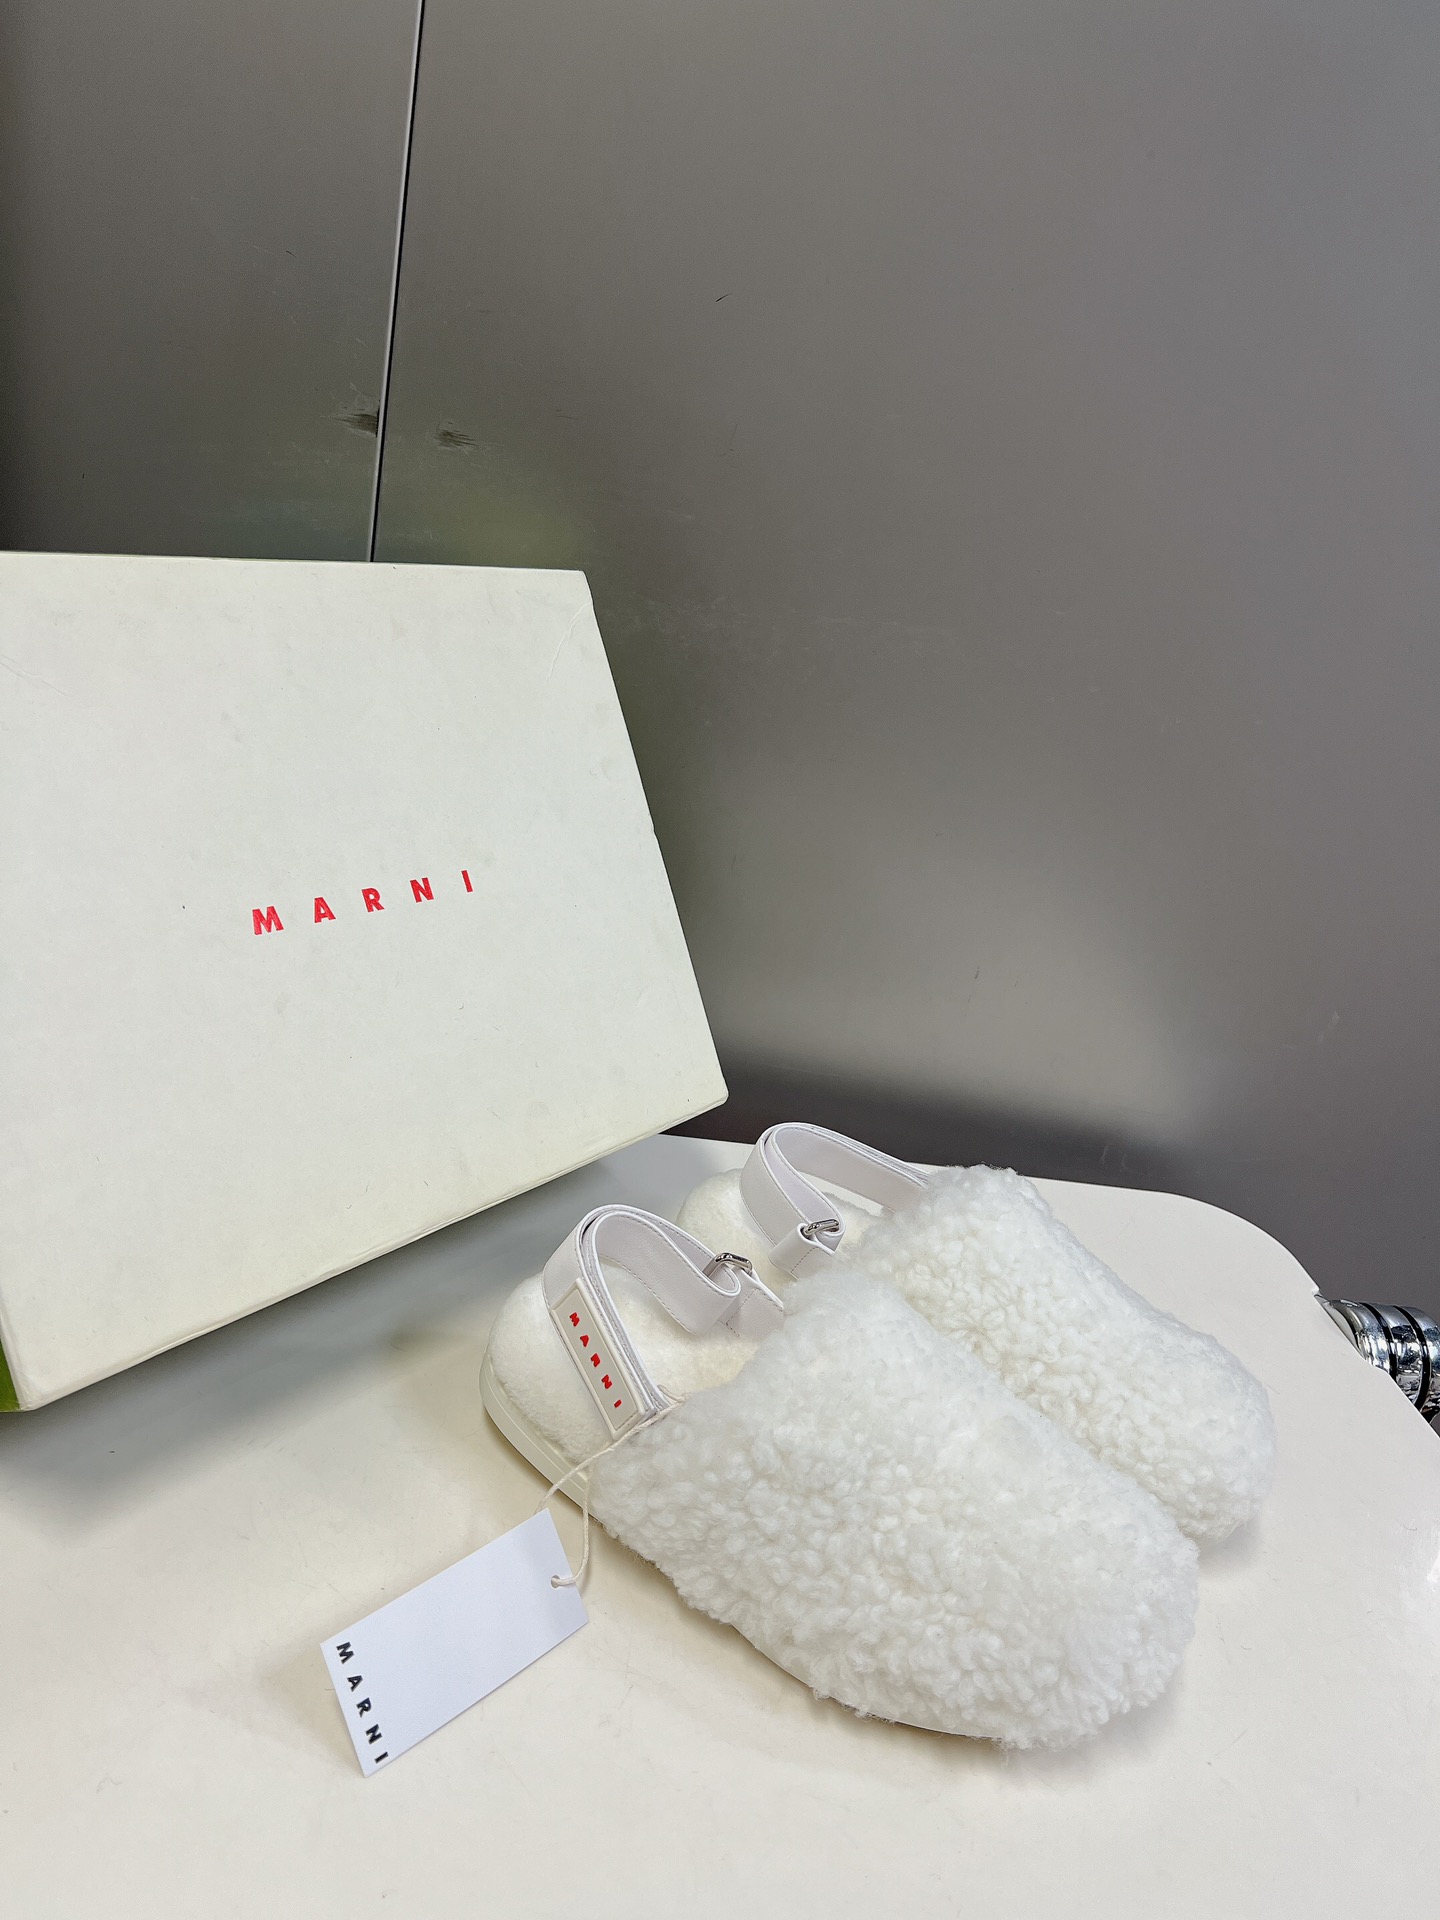 #玛尼新款毛毛凉鞋Marni是来自意大利的独立设计师品牌迅速走红国际时装界的一个著名品牌纯粹的奢华感是M